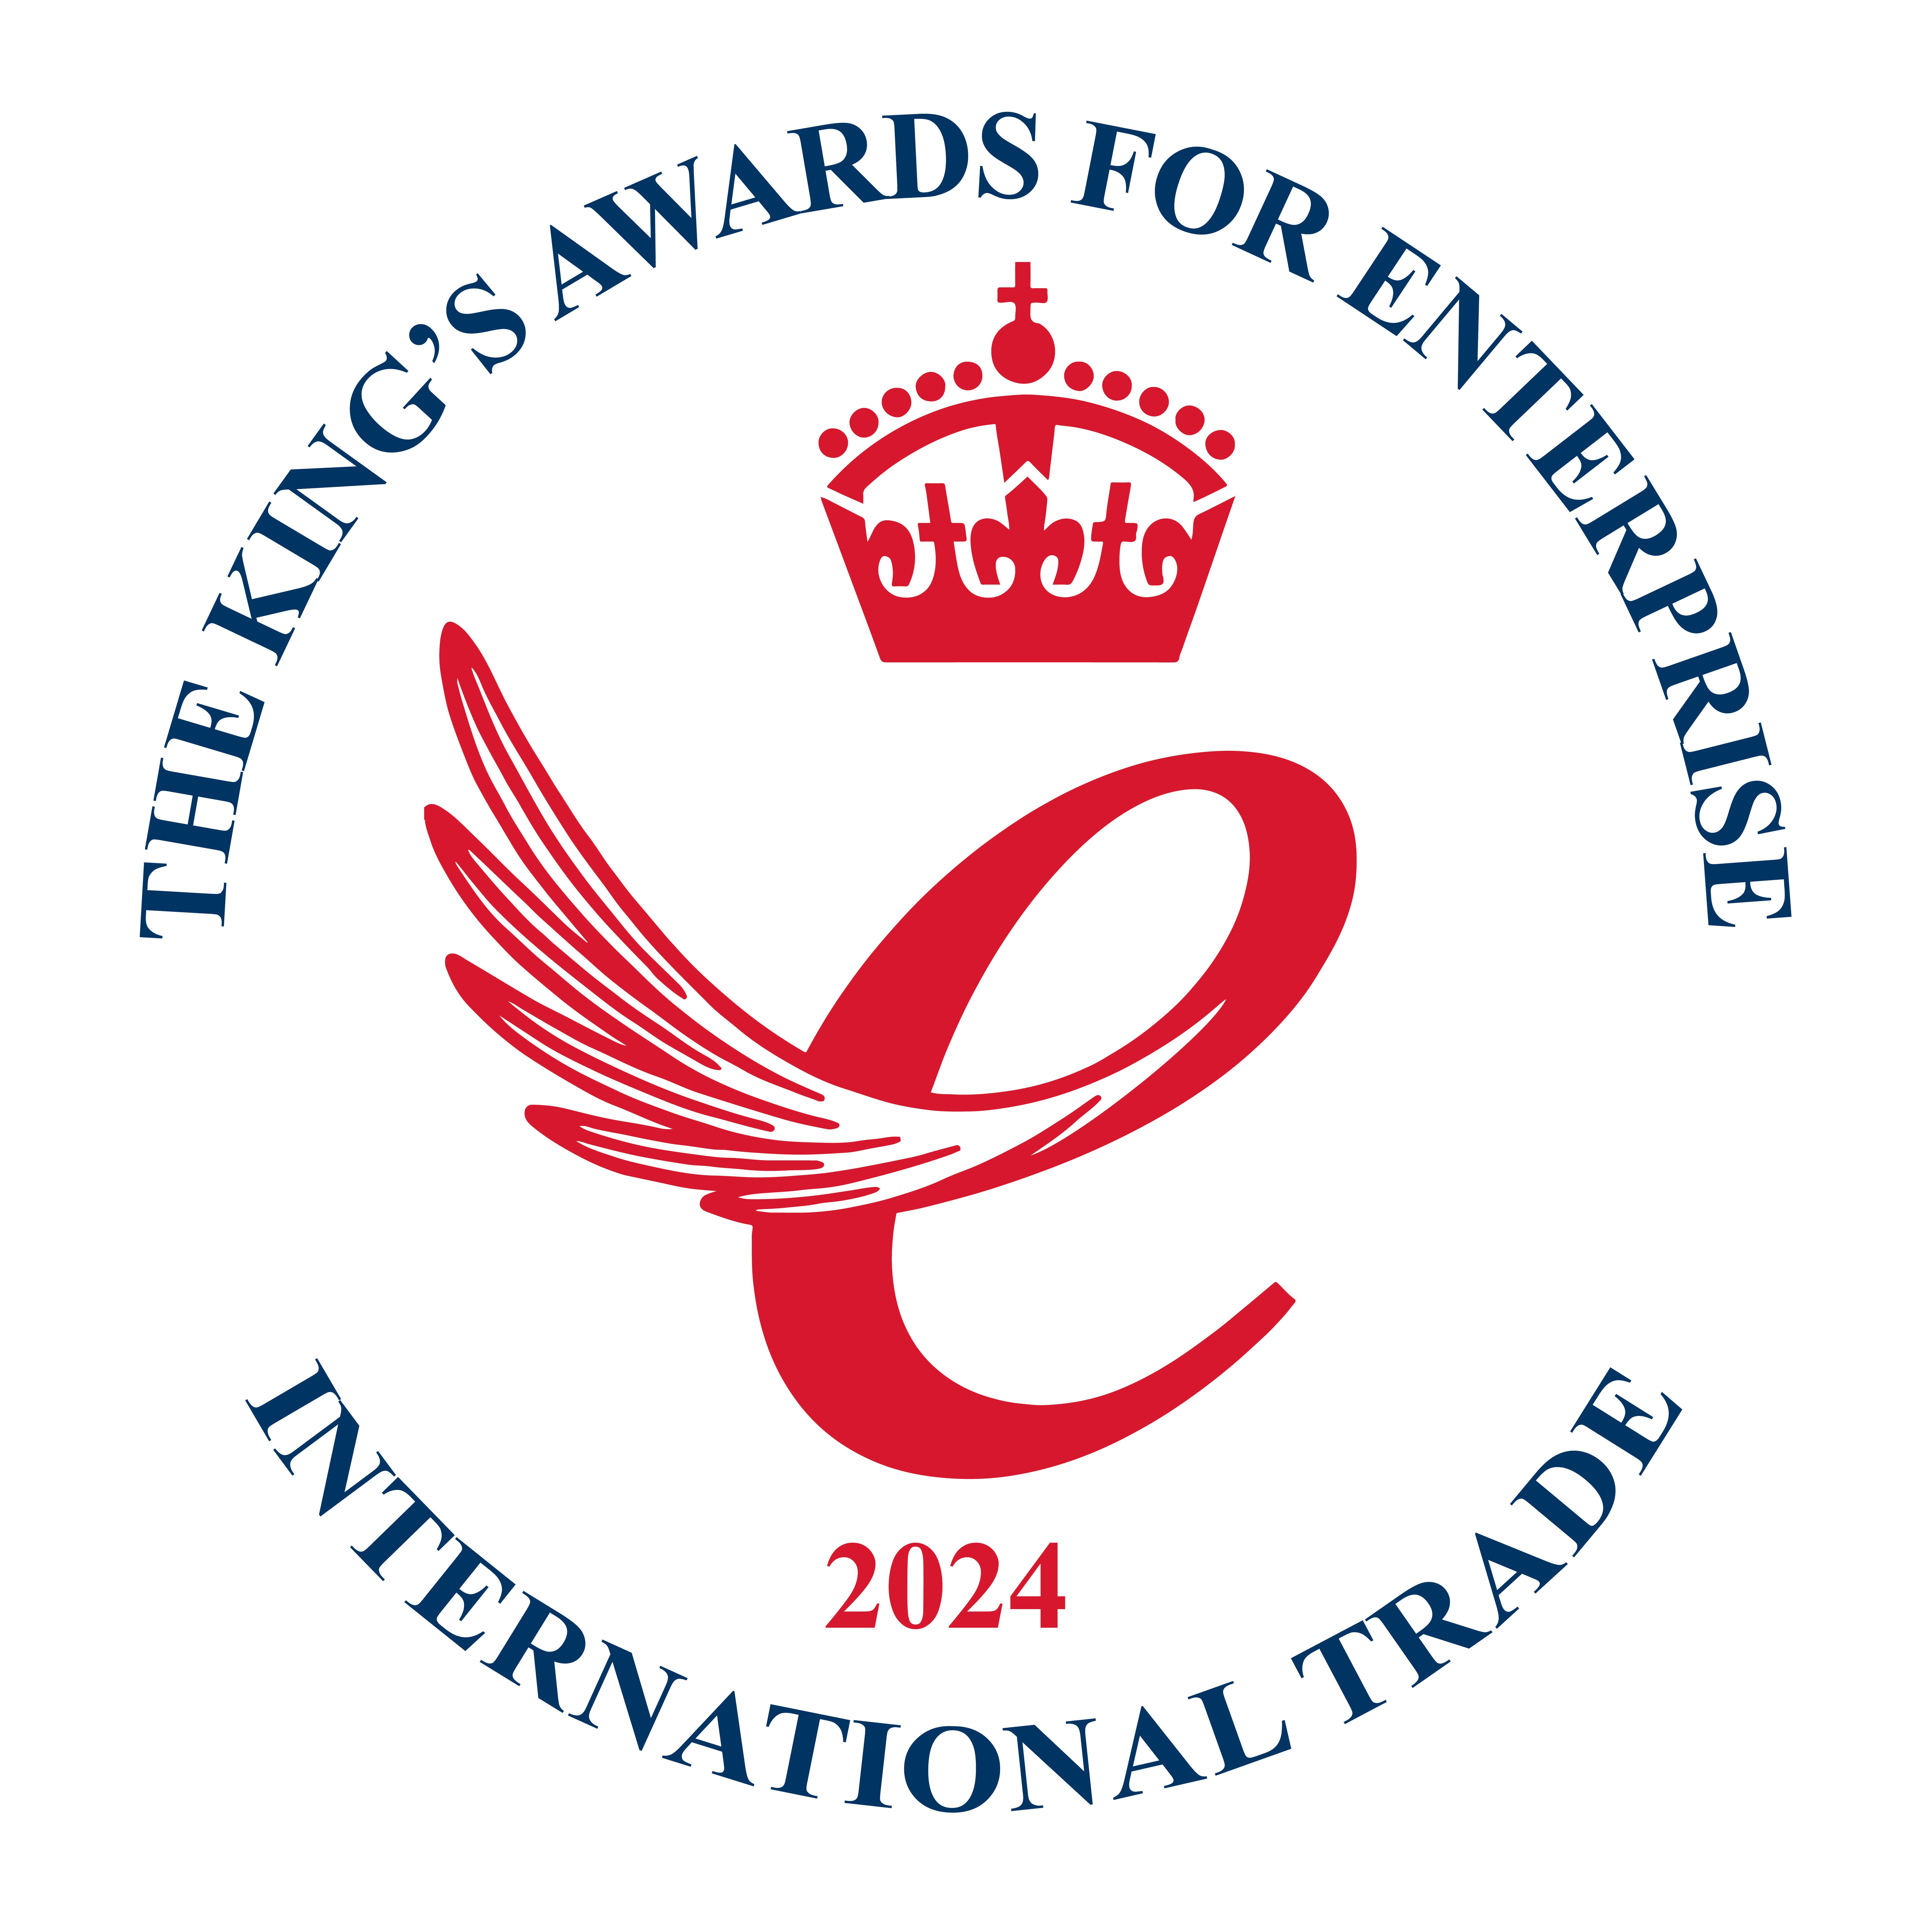 King's Awards for Enterprise International Trade 2024 emblem